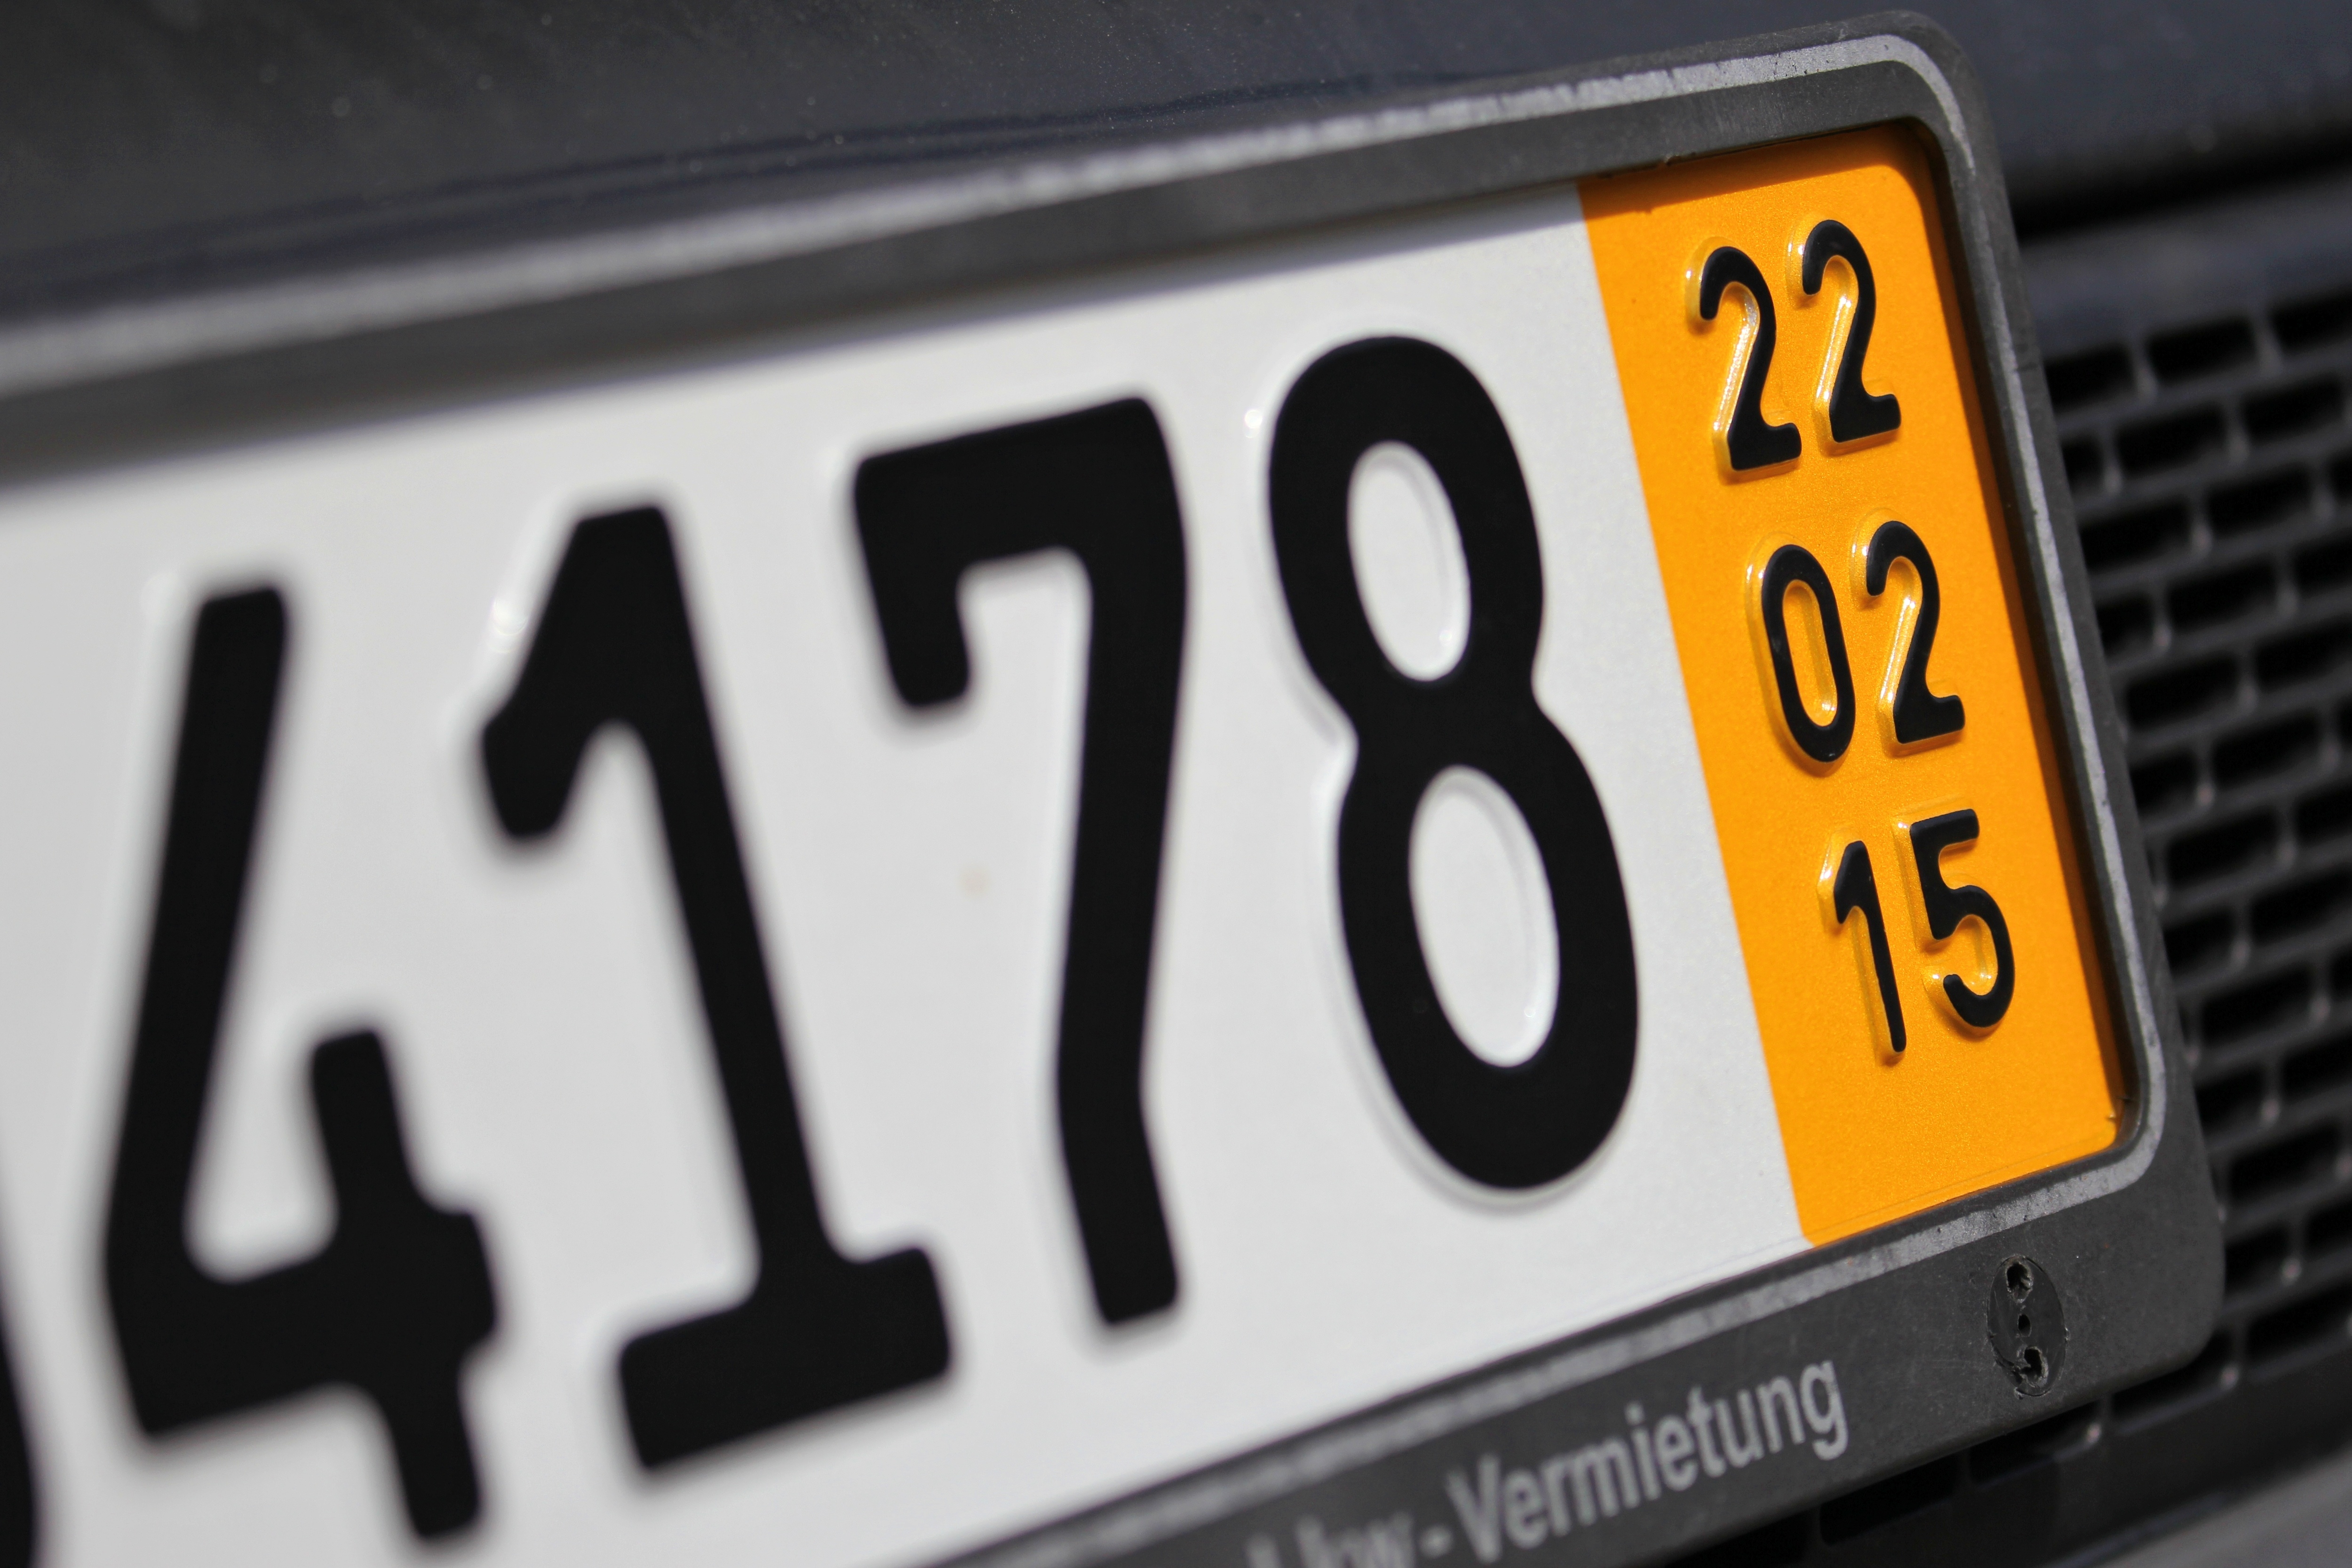 Kurzzeitkennzeichen auf deutschem Auto